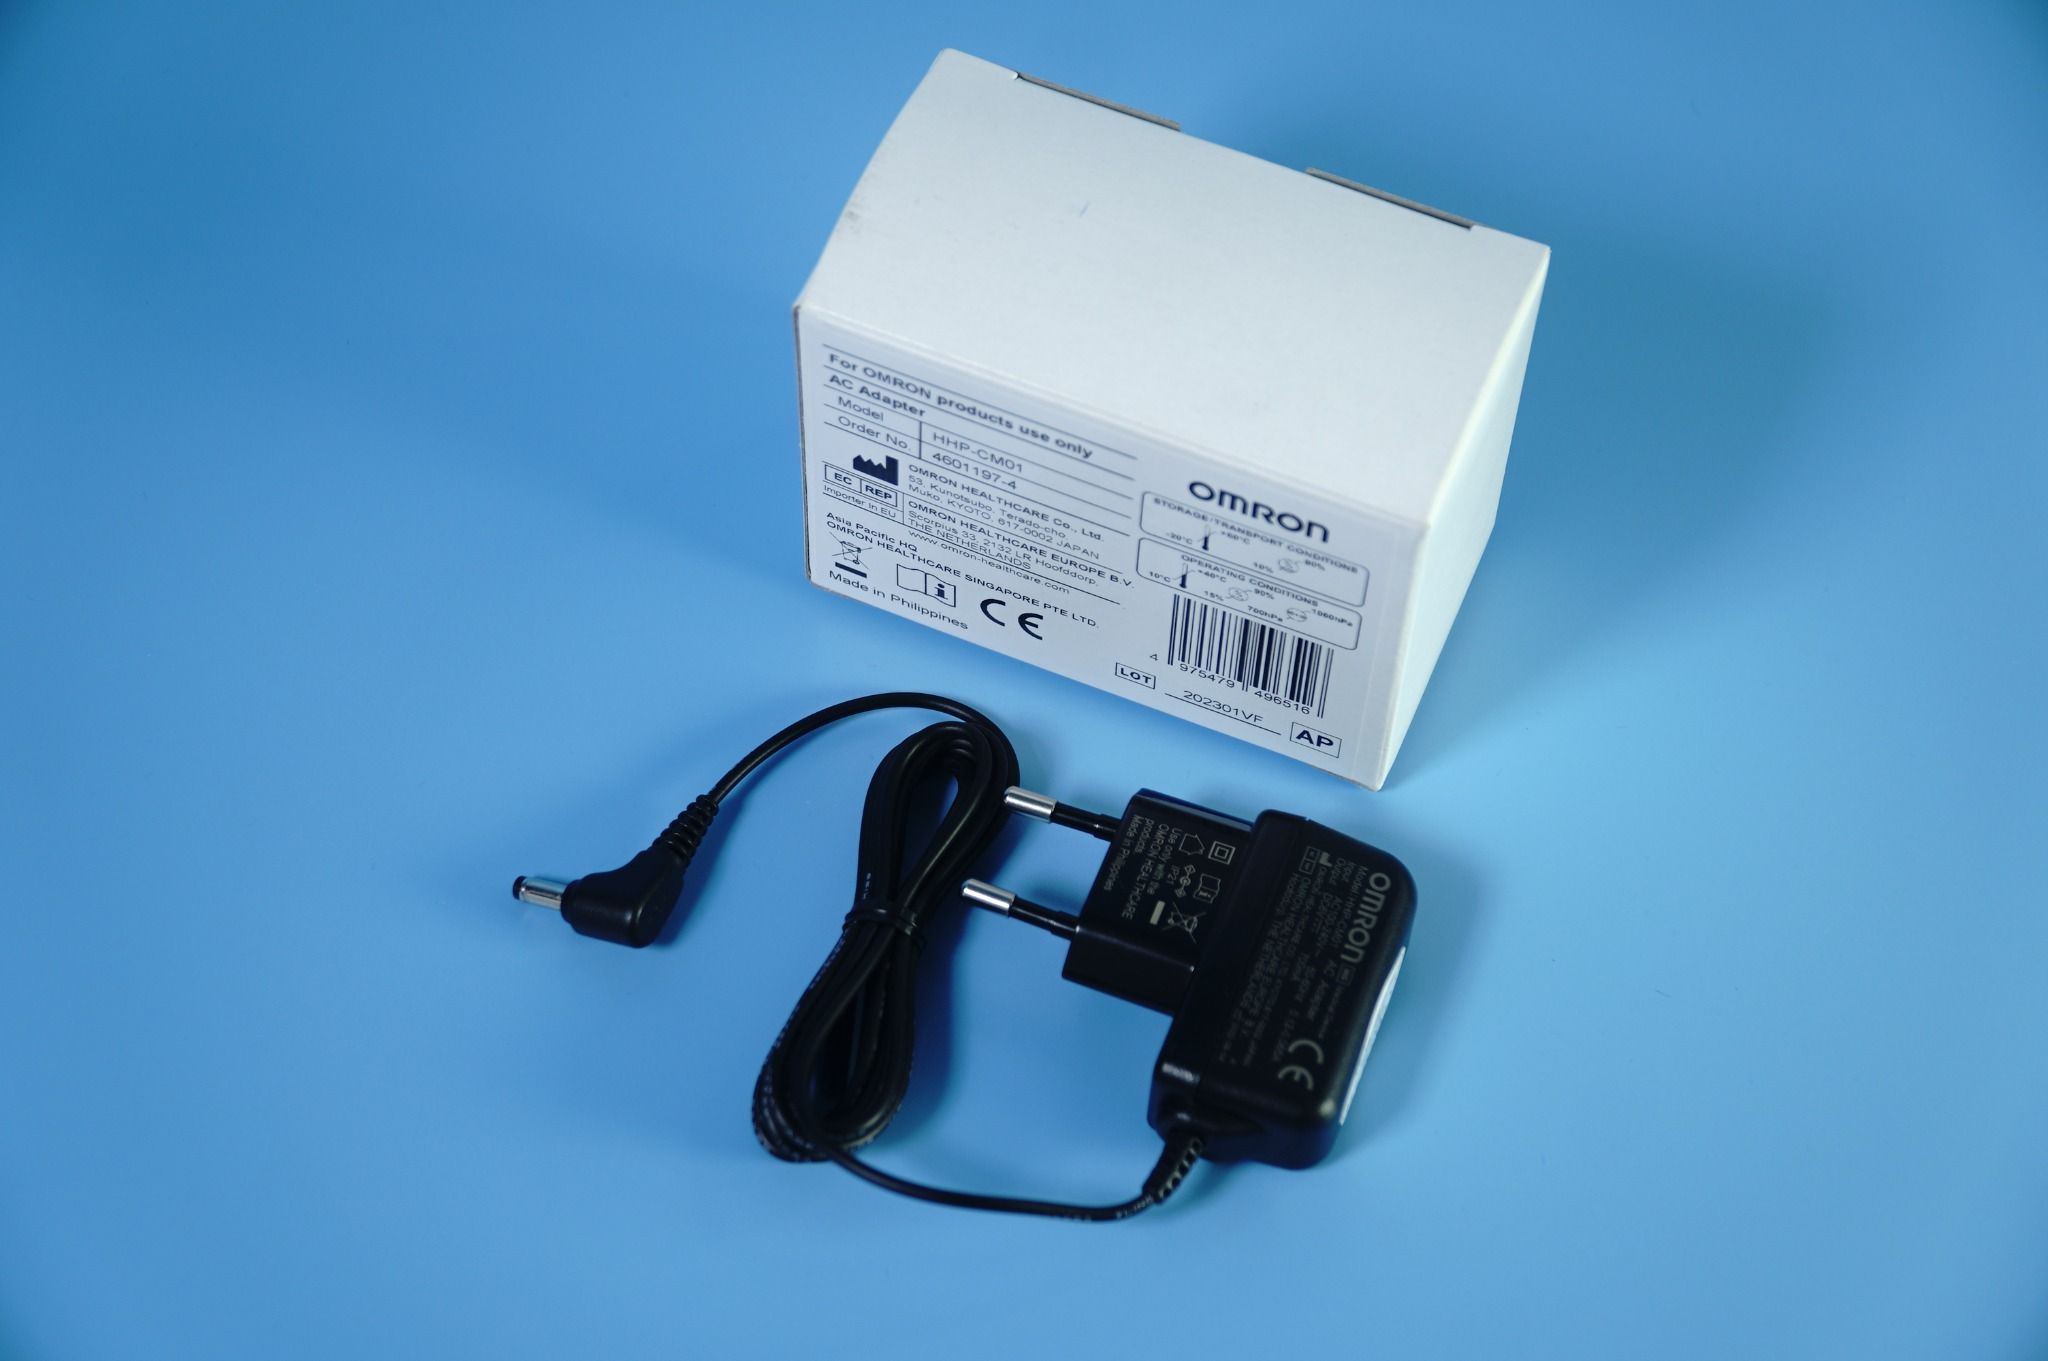  Củ sạc máy đo huyết áp Omron - Bộ chuyển đổi điện áp máy huyết áp AC Adapter 